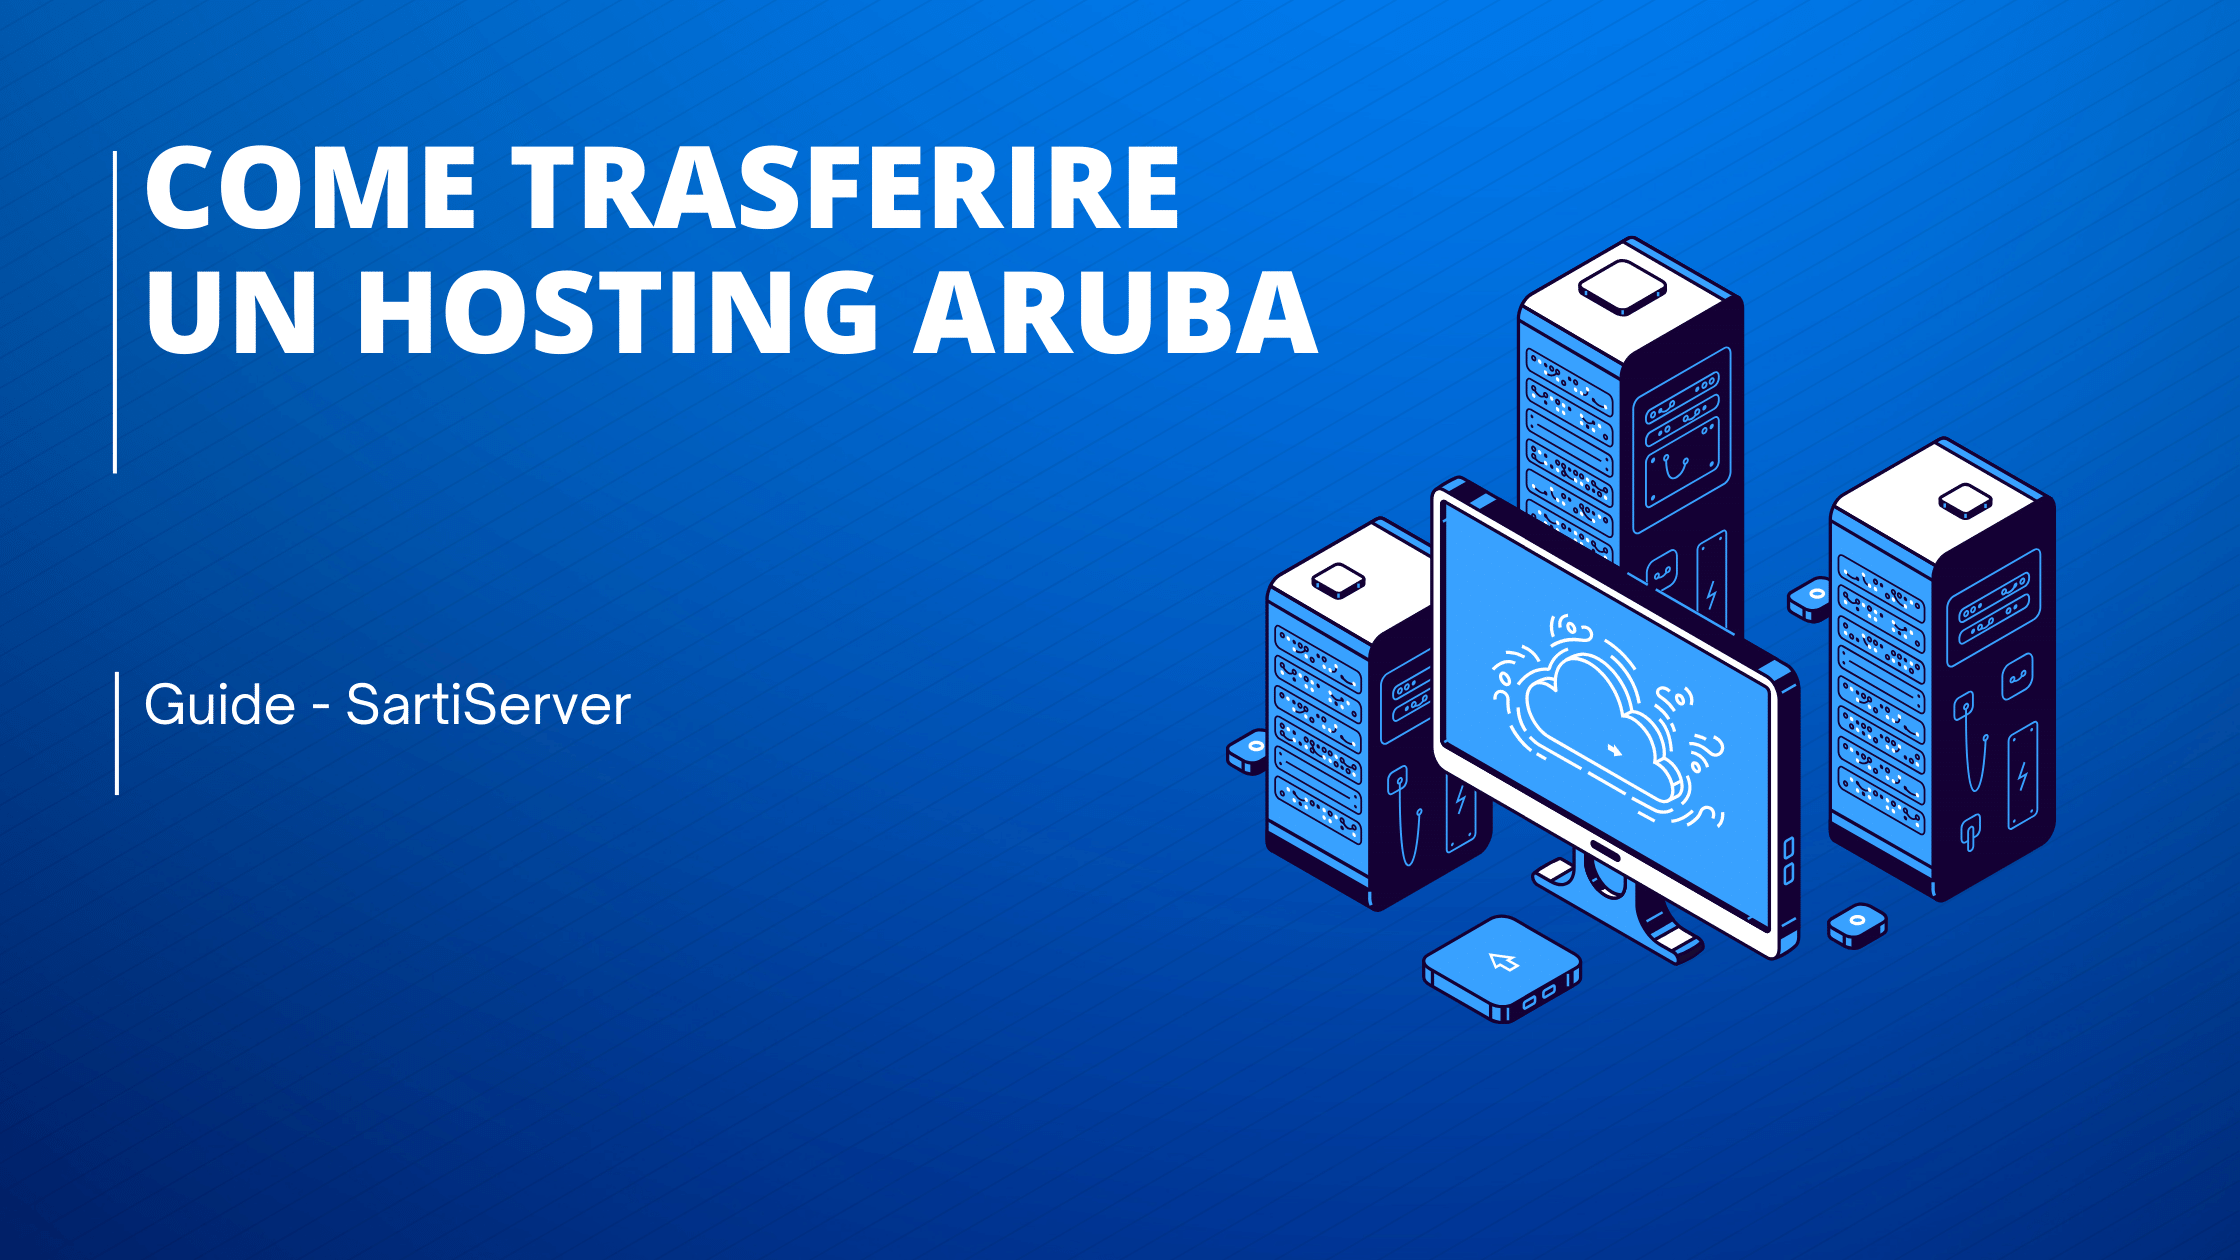 Come Trasferire un Hosting Aruba